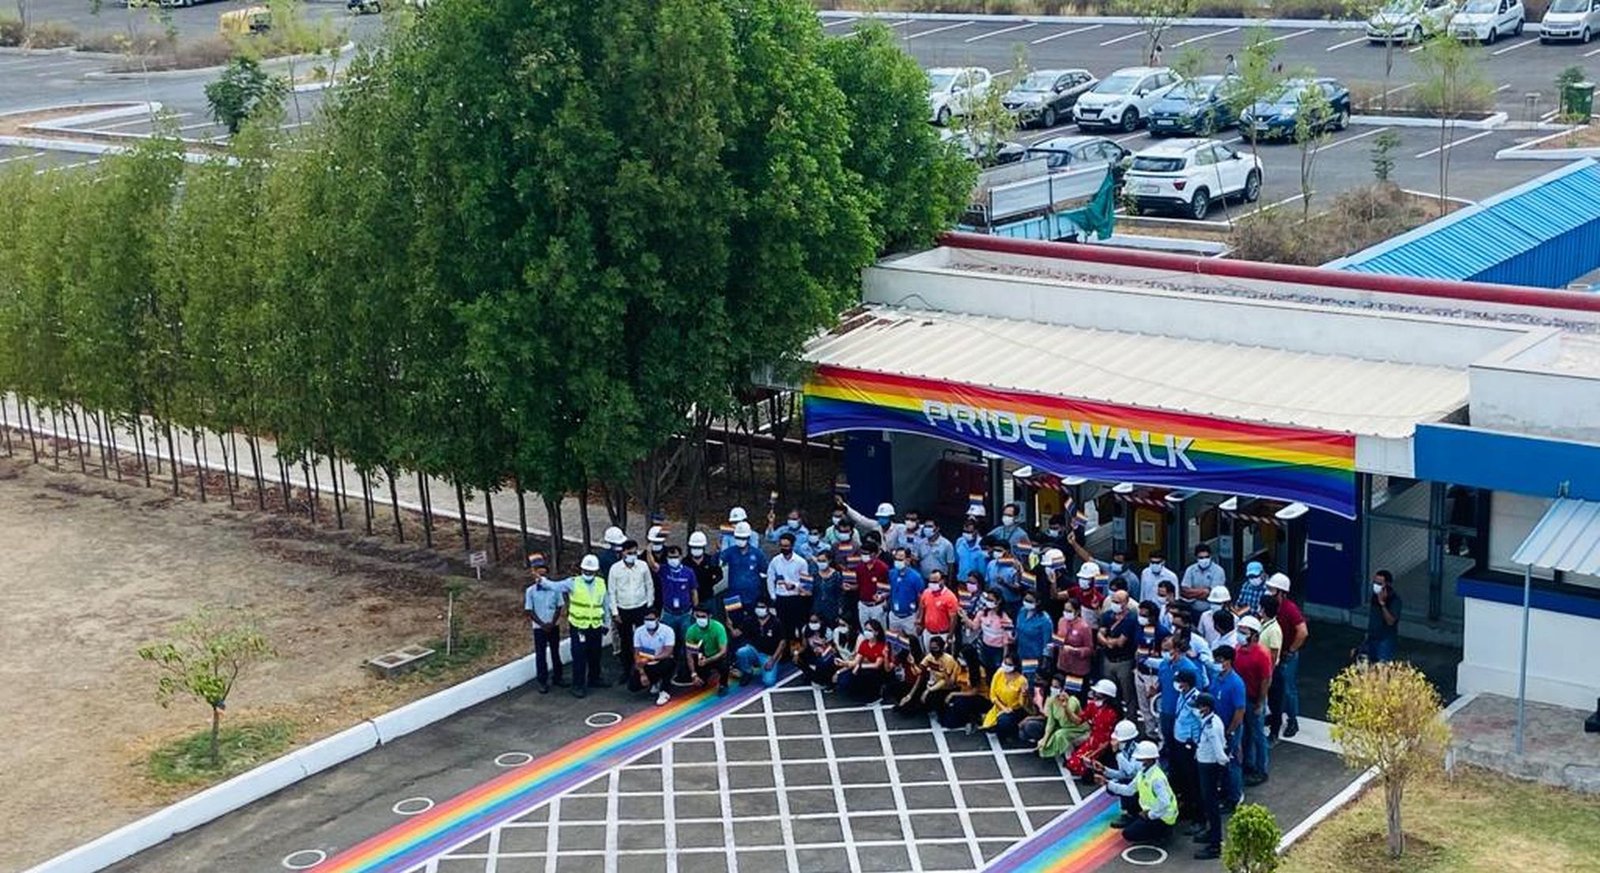 GE conducts Pride Walks1